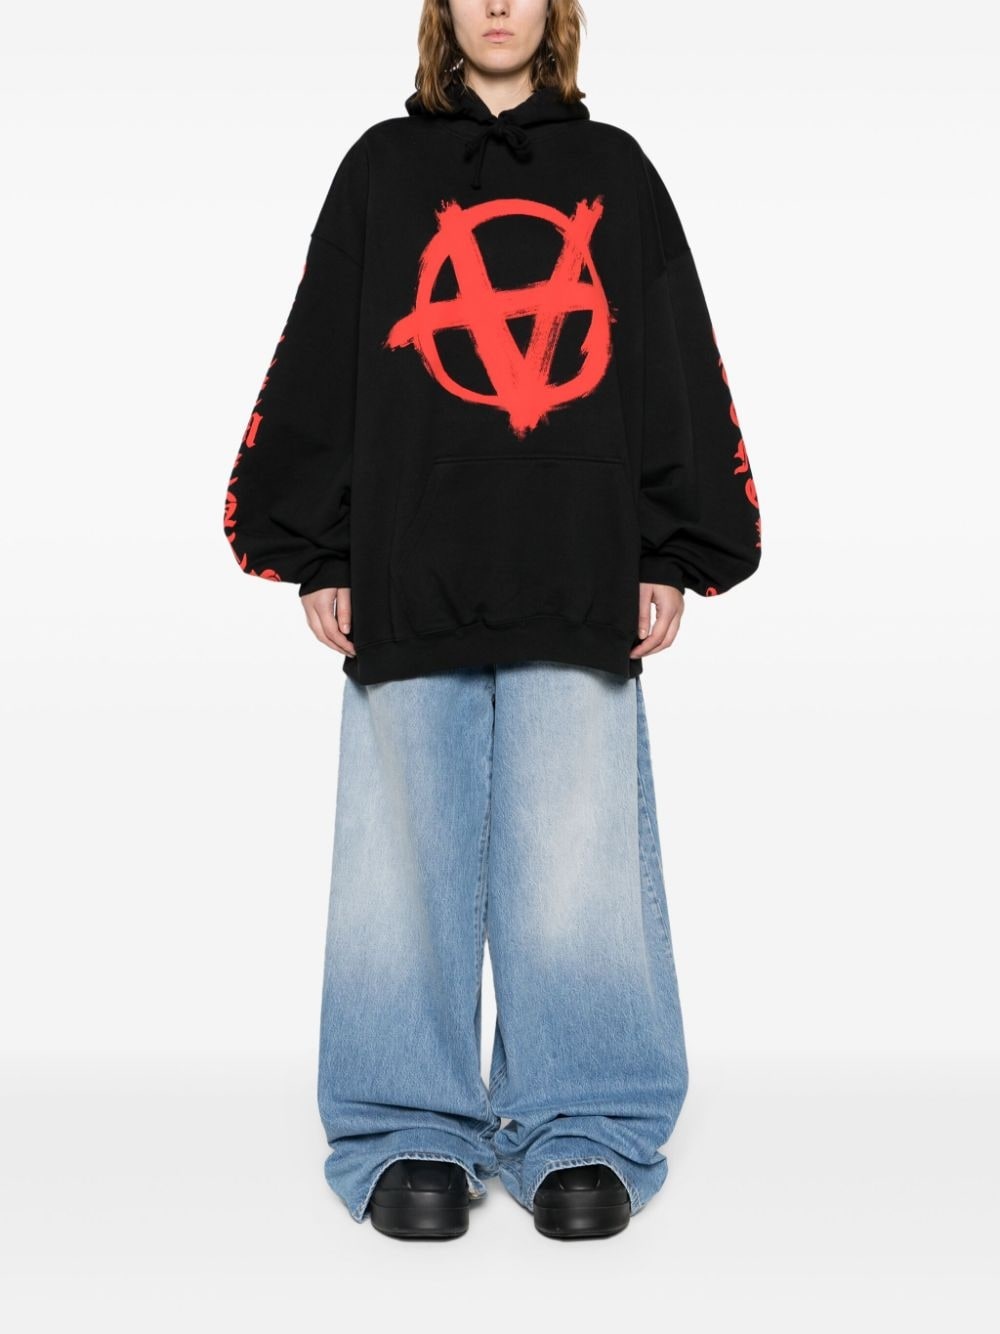 Reverse Anarchy printed hoodie - 2